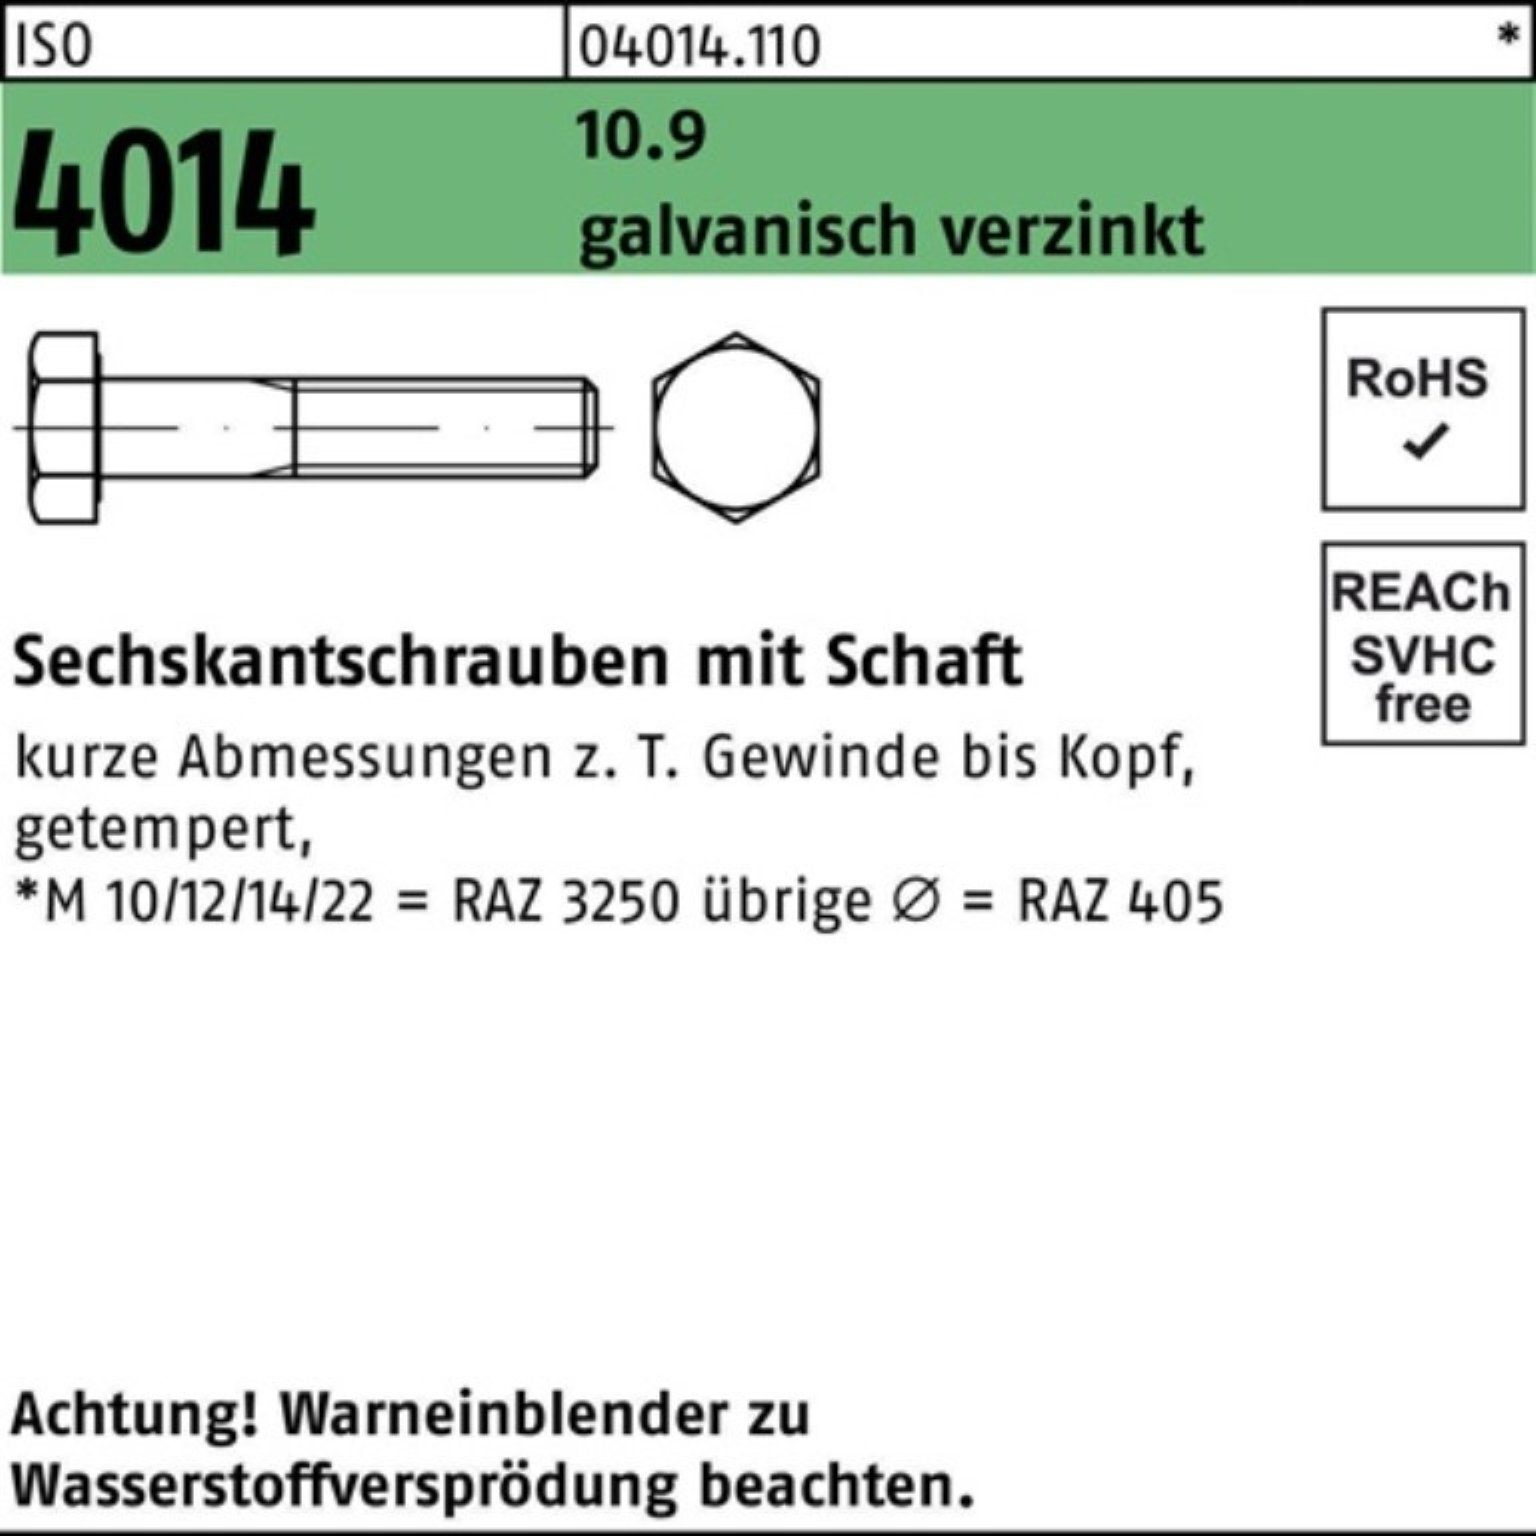 Schaft Sechskantschraube 190 galv.verz. 100er M16x Bufab ISO Pack Sechskantschraube 4014 10.9